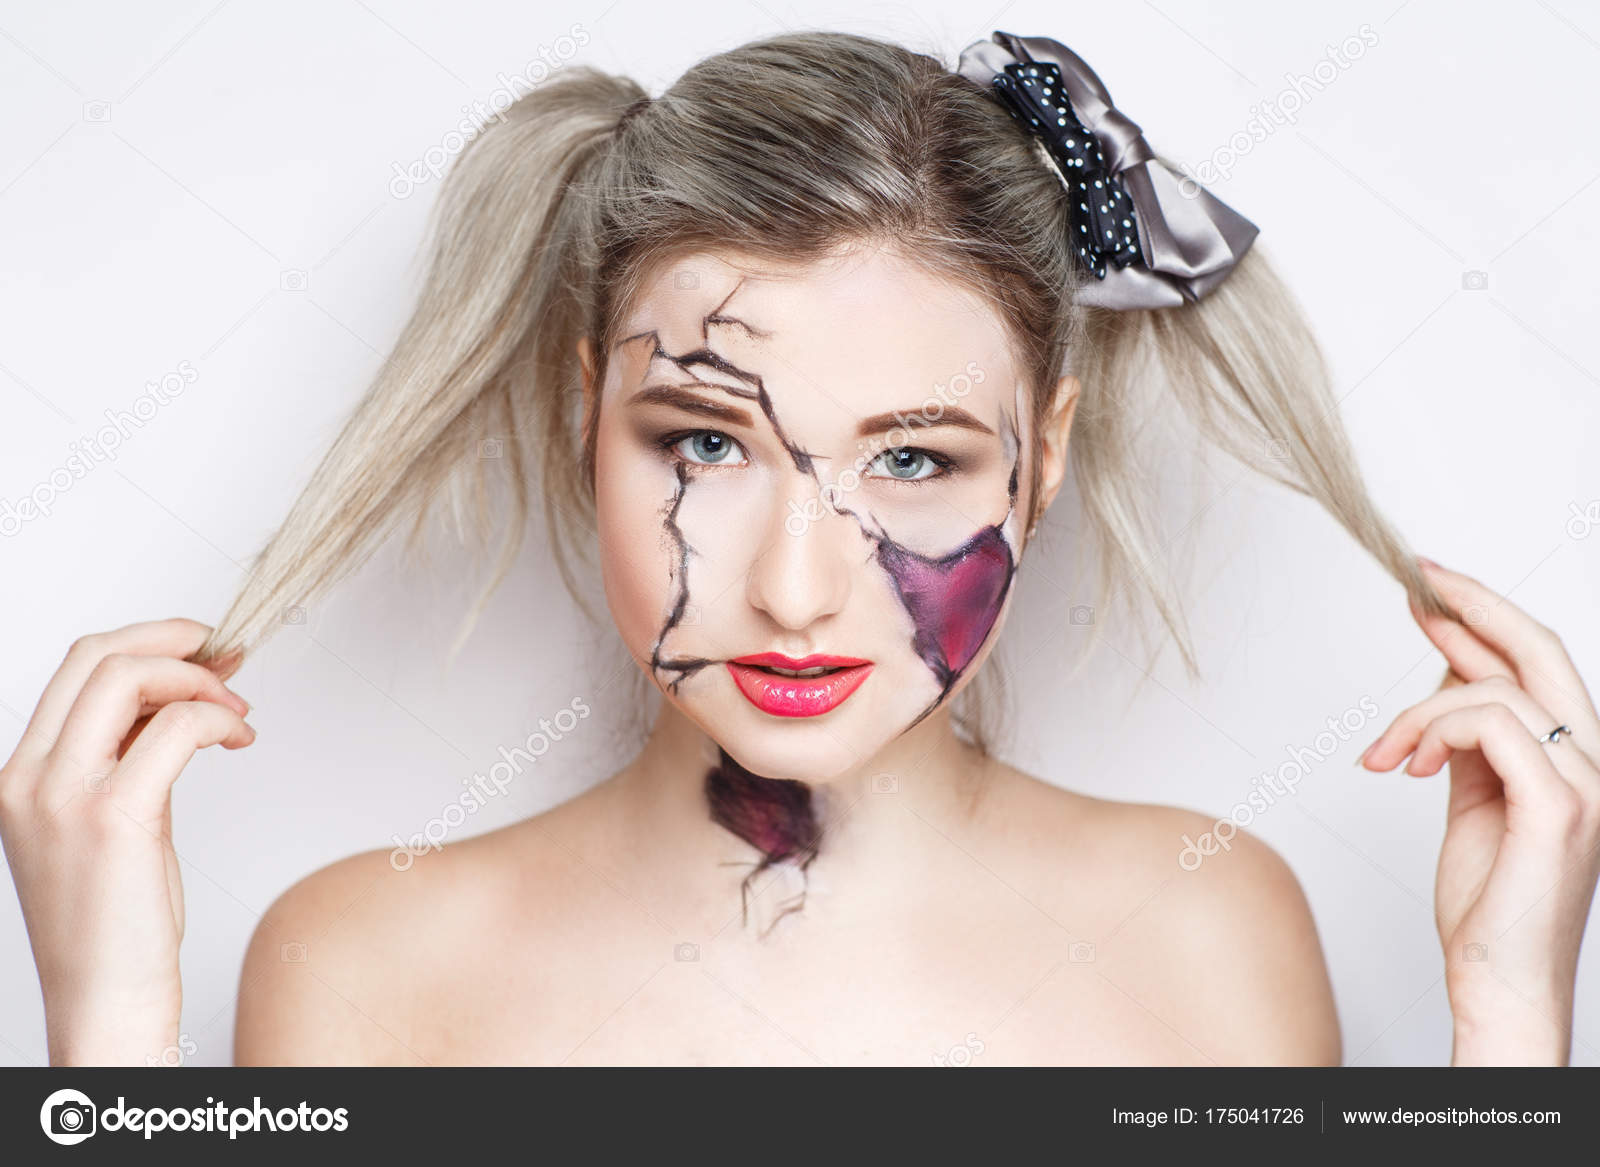 Maquiagem de Boneca: Transforme a Diversão com Estilo e Criatividade